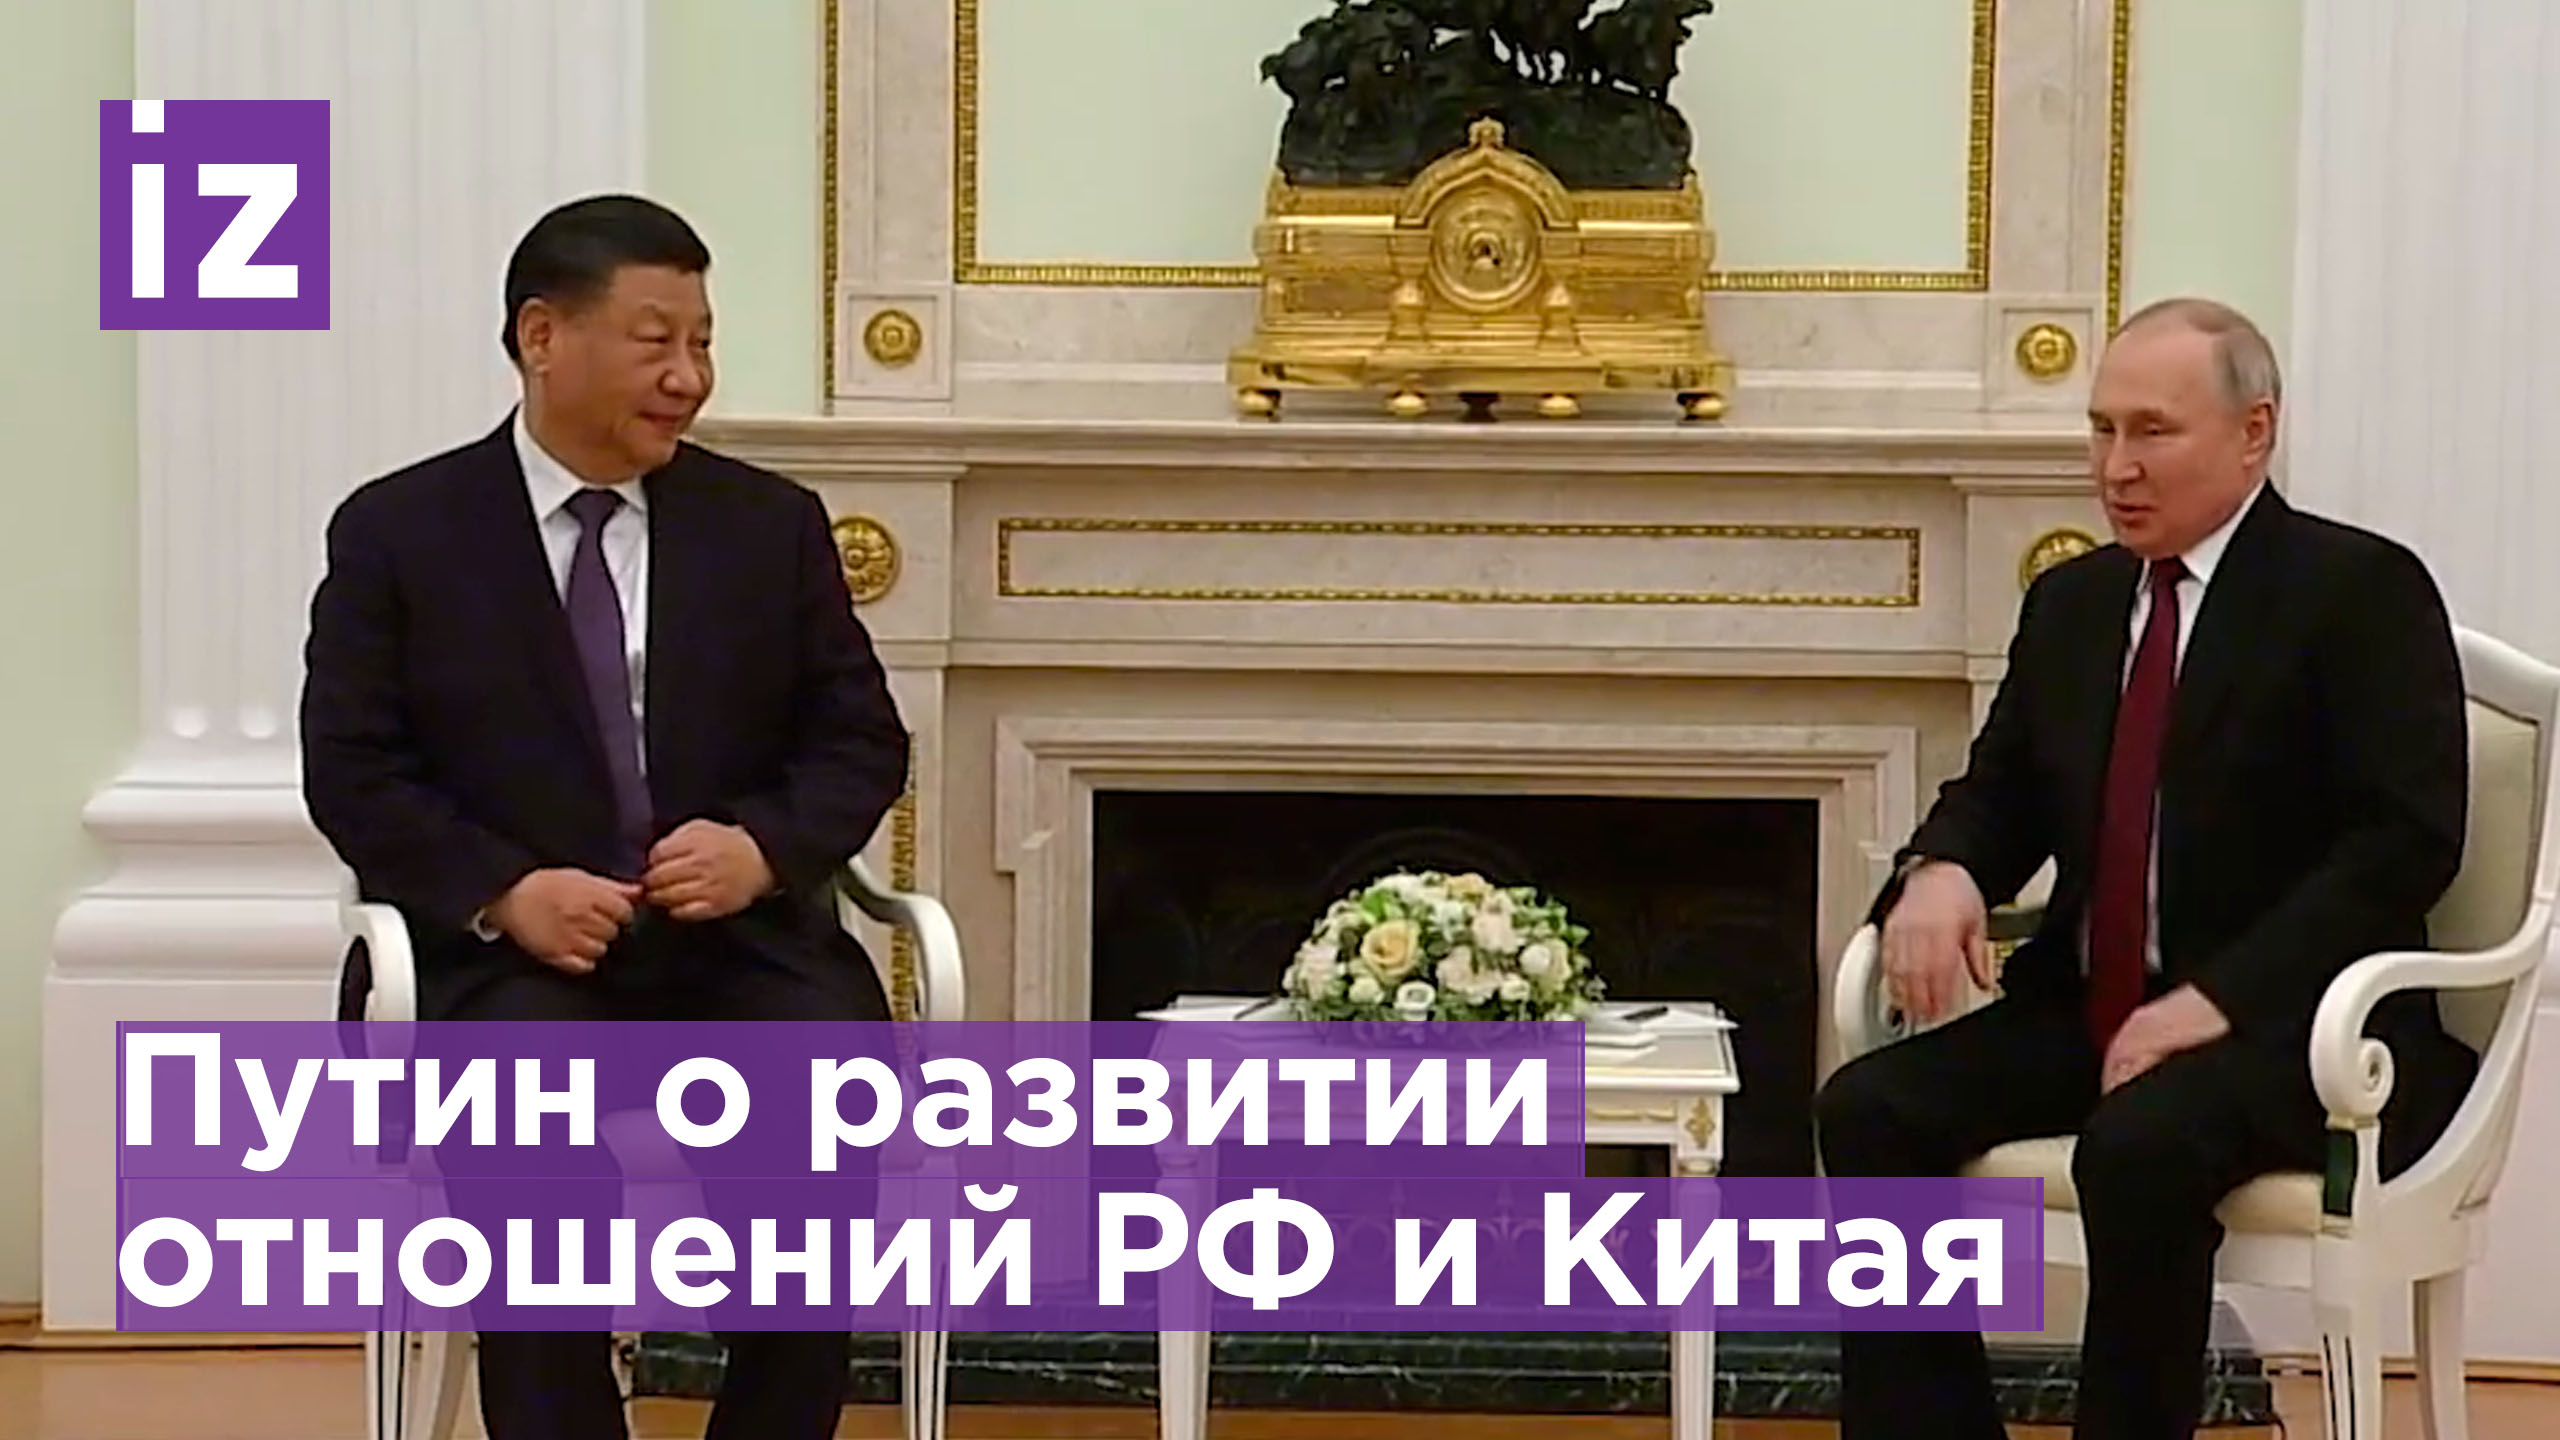 Путин: «Мы даже немножко завидуем Китаю». Как проходит встреча президента России и Си Цзиньпина